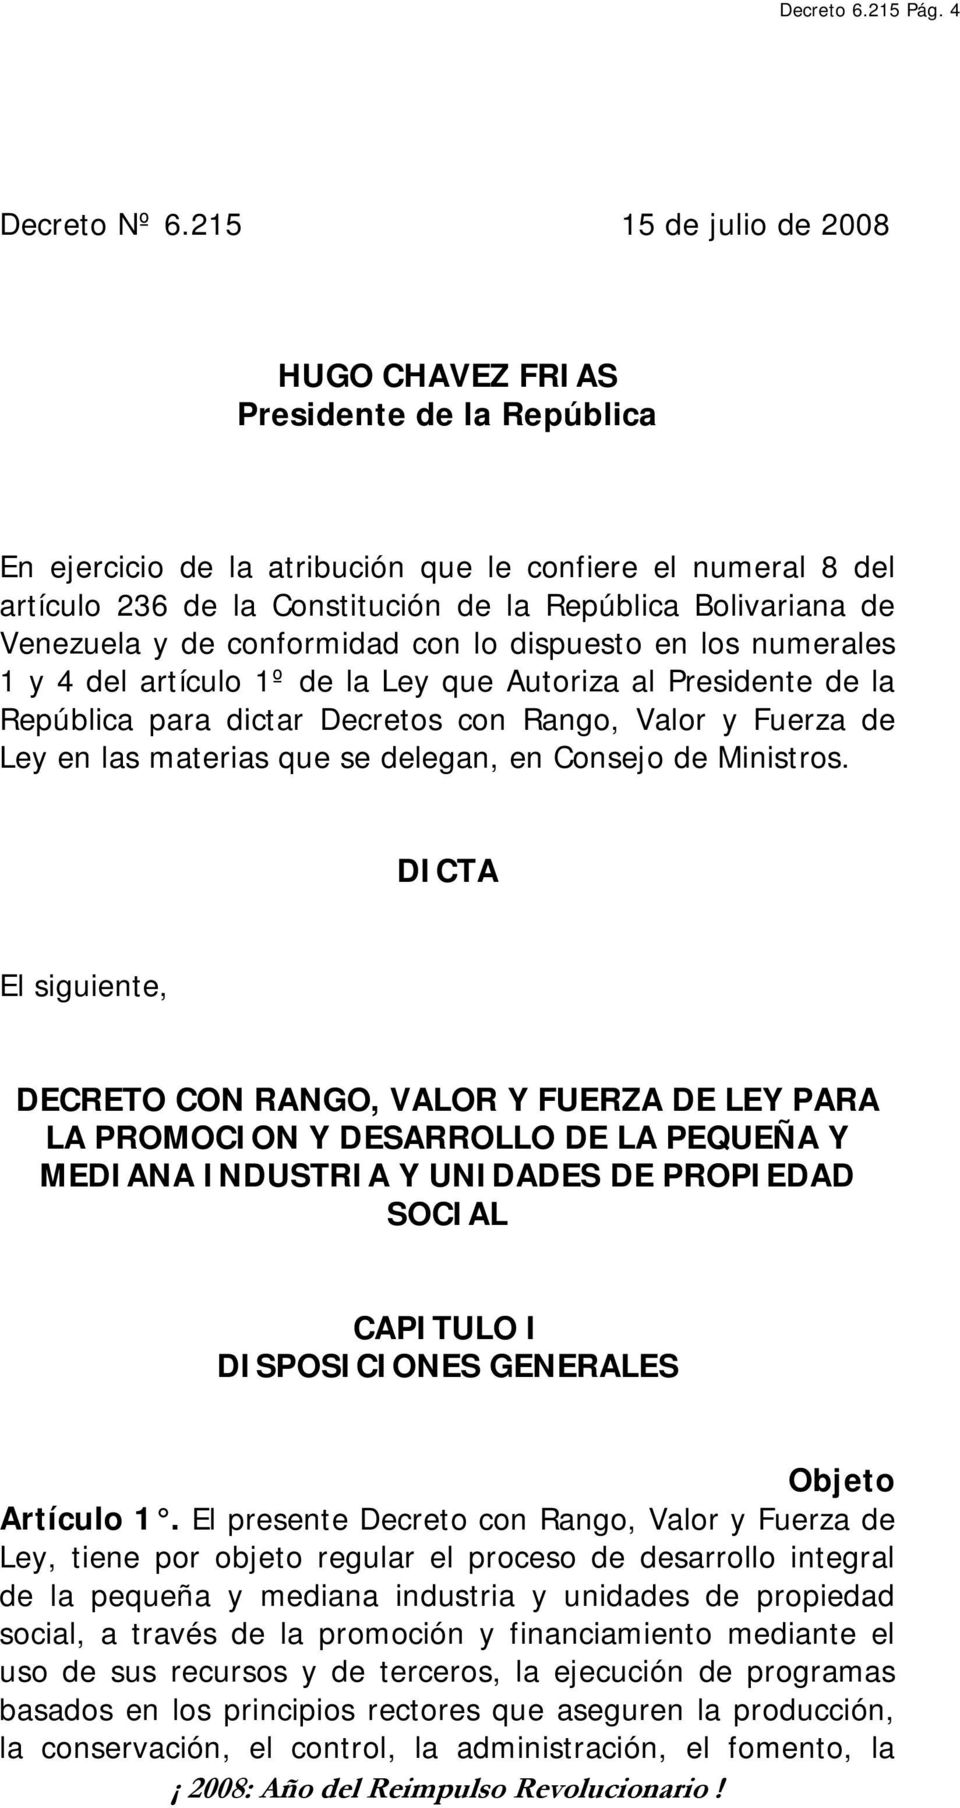 Venezuela y de conformidad con lo dispuesto en los numerales 1 y 4 del artículo 1º de la Ley que Autoriza al Presidente de la República para dictar Decretos con Rango, Valor y Fuerza de Ley en las